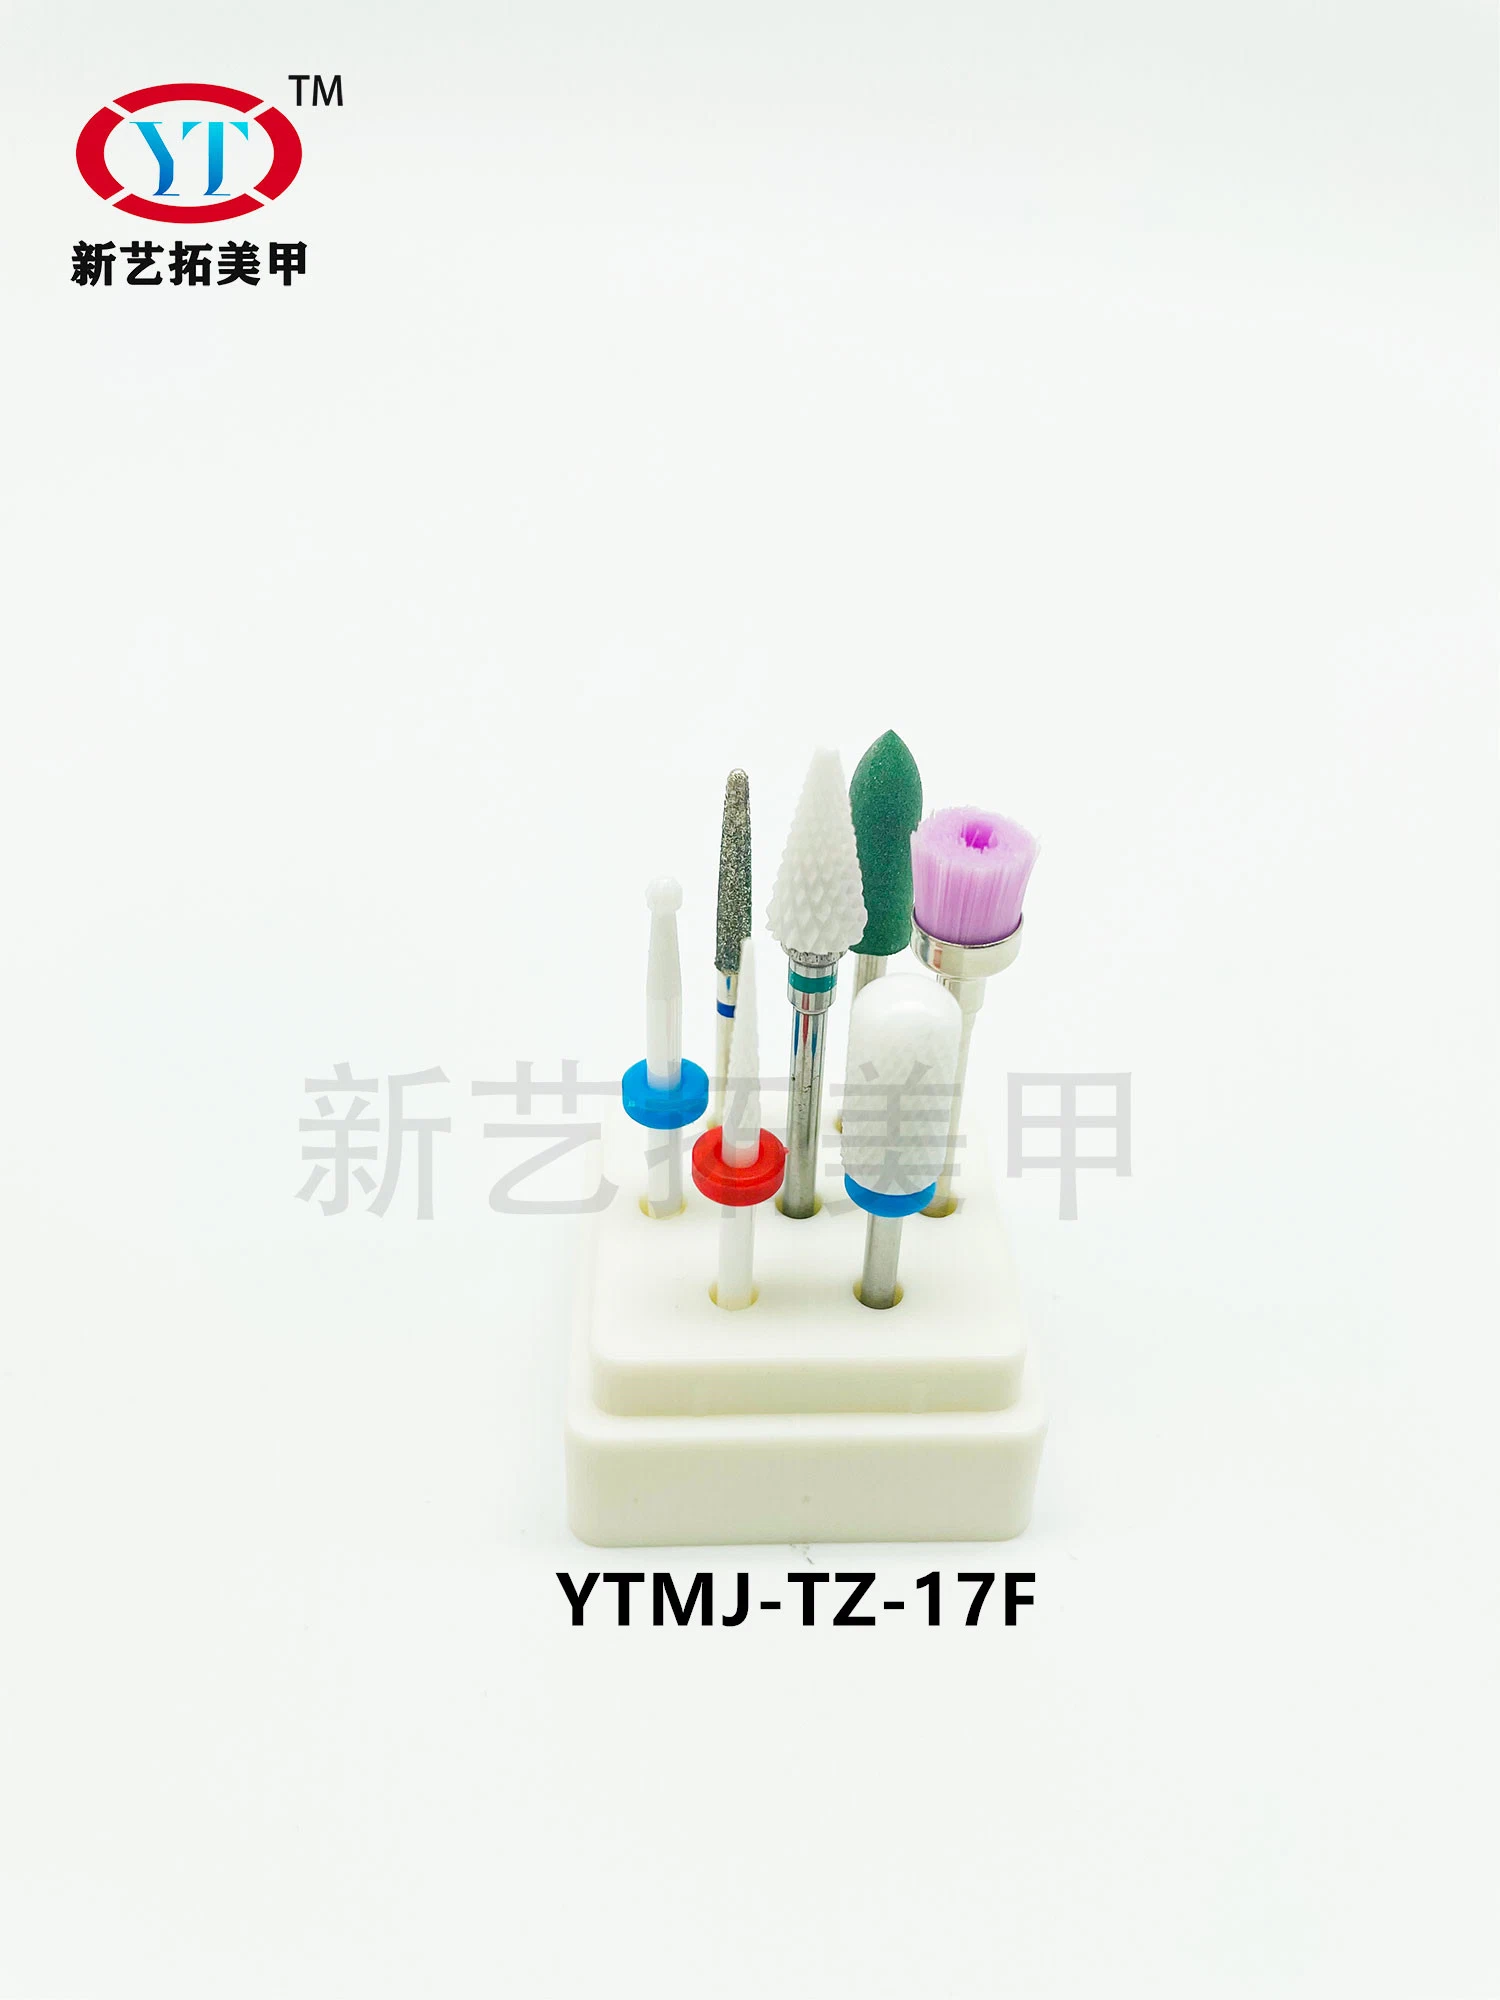 Clou Polissant Stick embout cuticule Outils de manucure tête de meulage en silicone Forets à ongles électriques pour manucure de forets à ongles électriques Ytmj-TZ-17f